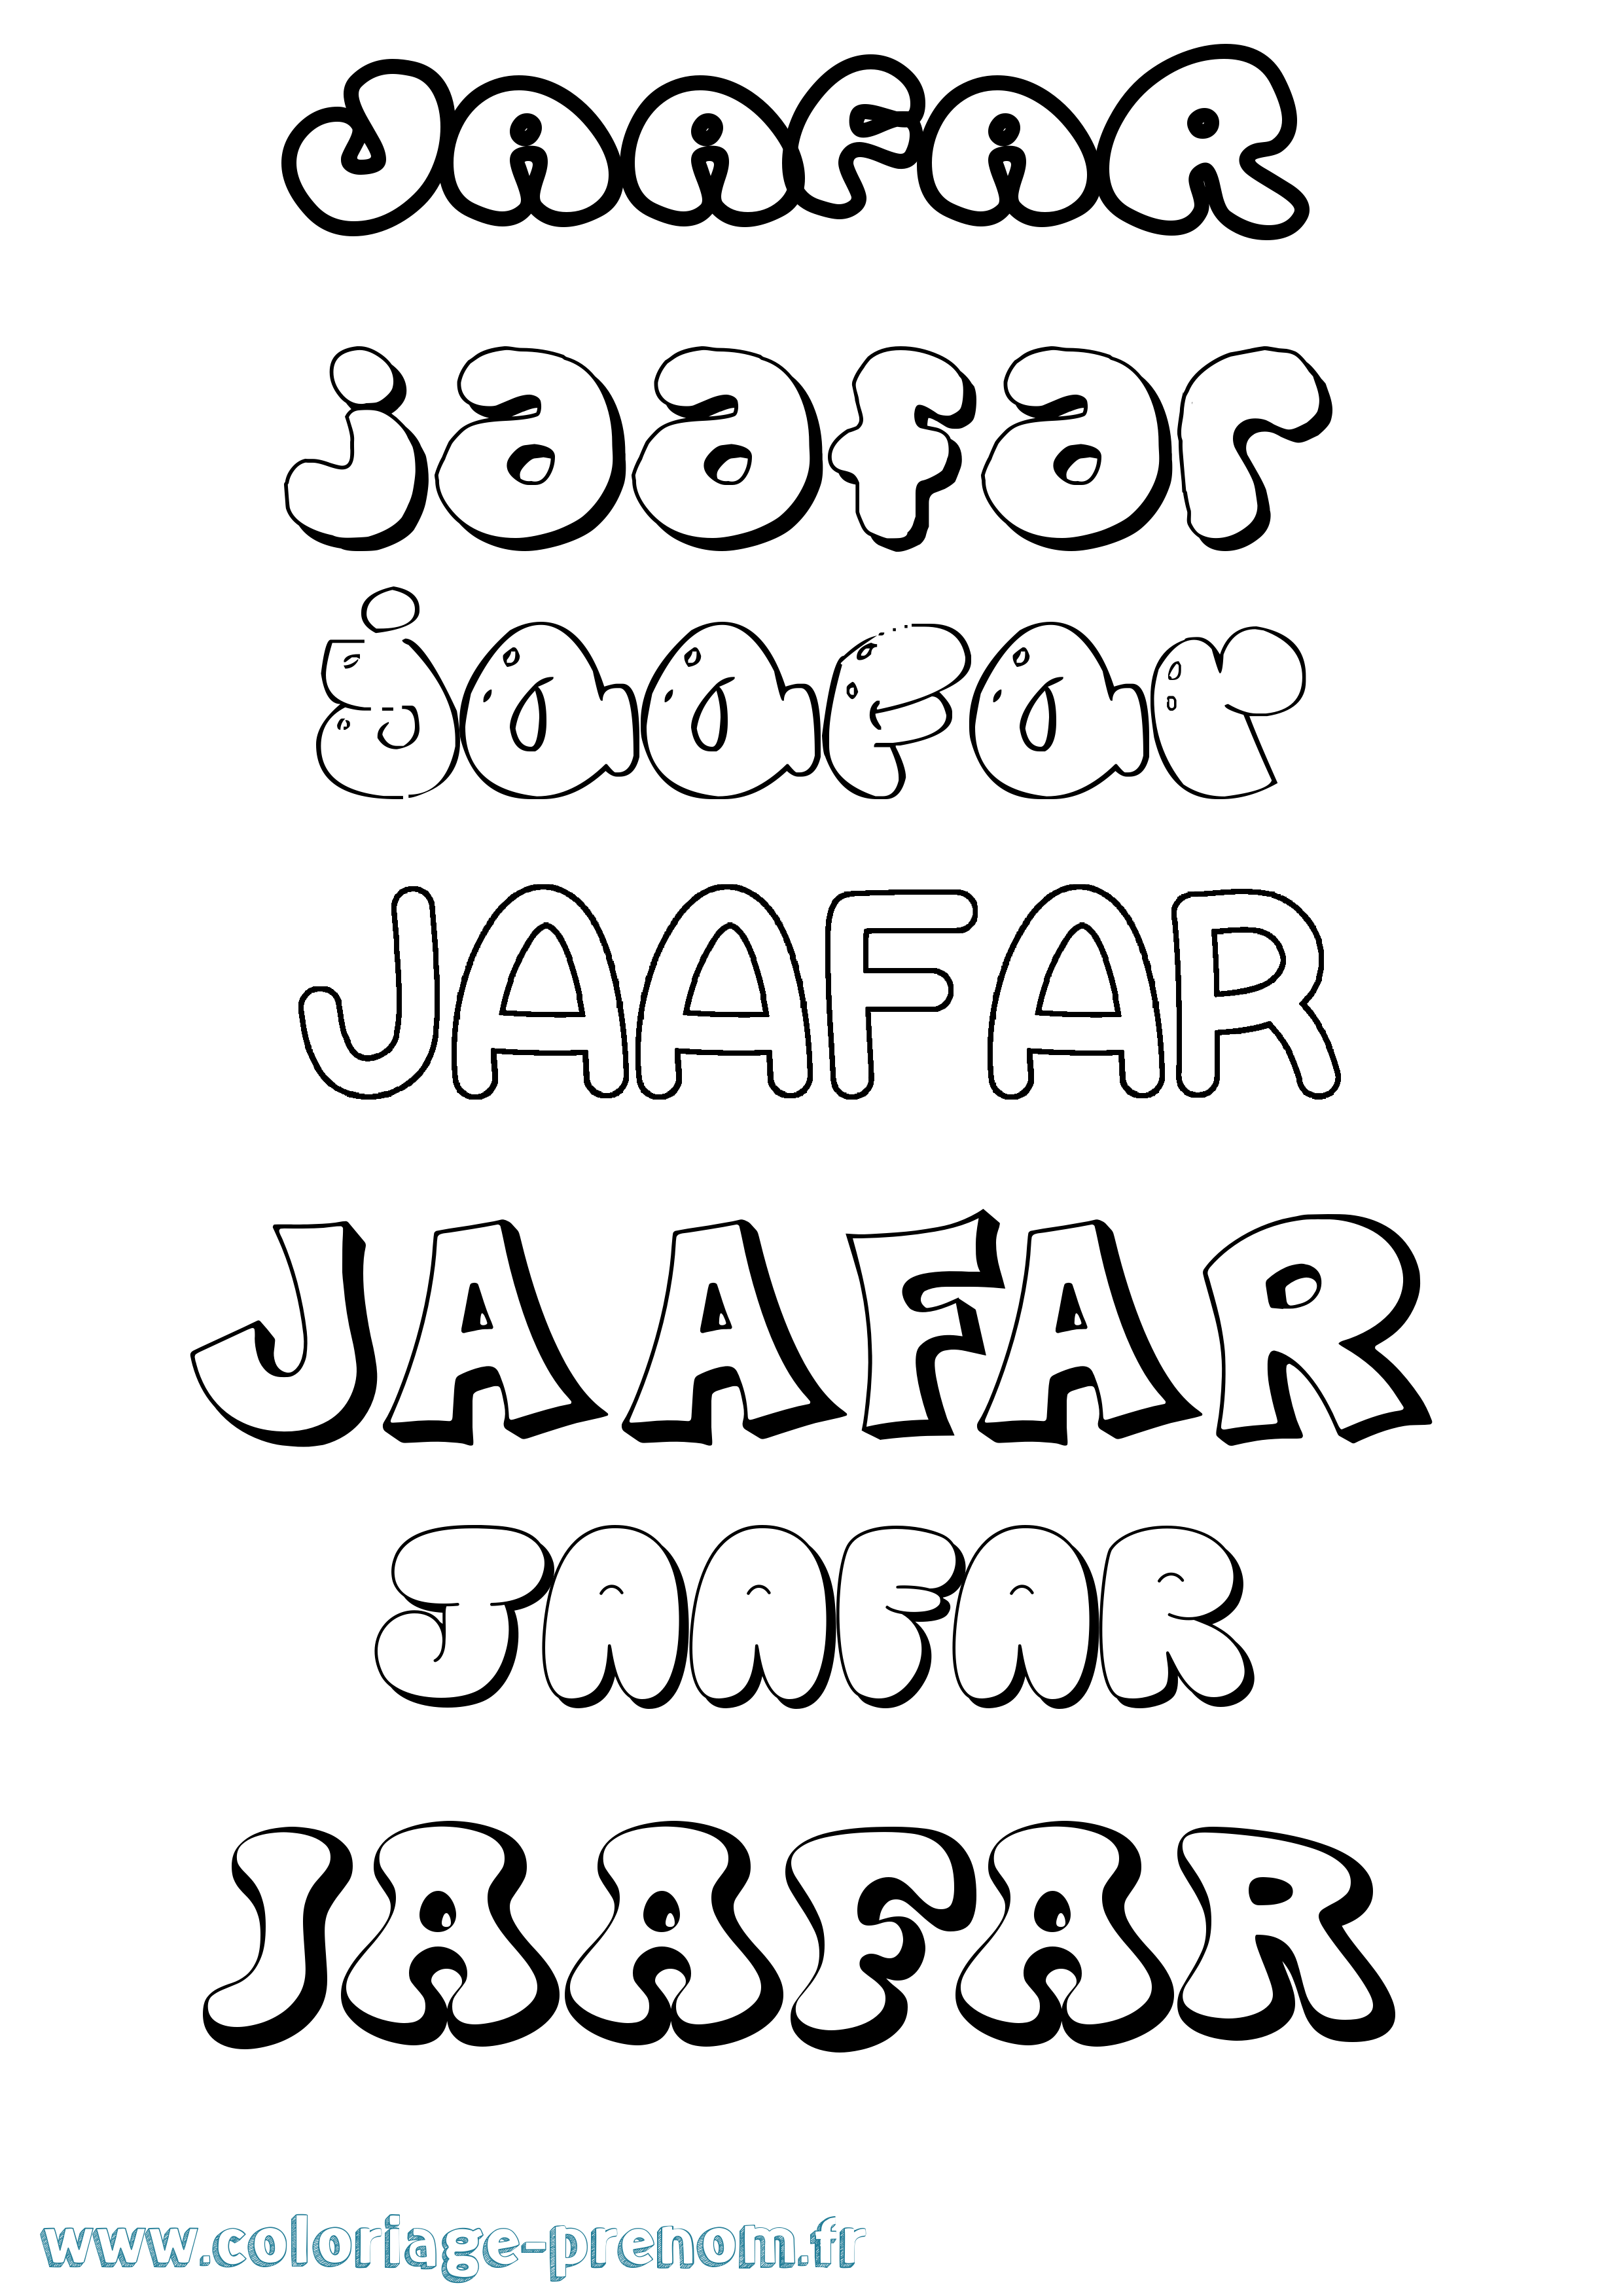 Coloriage prénom Jaafar Bubble